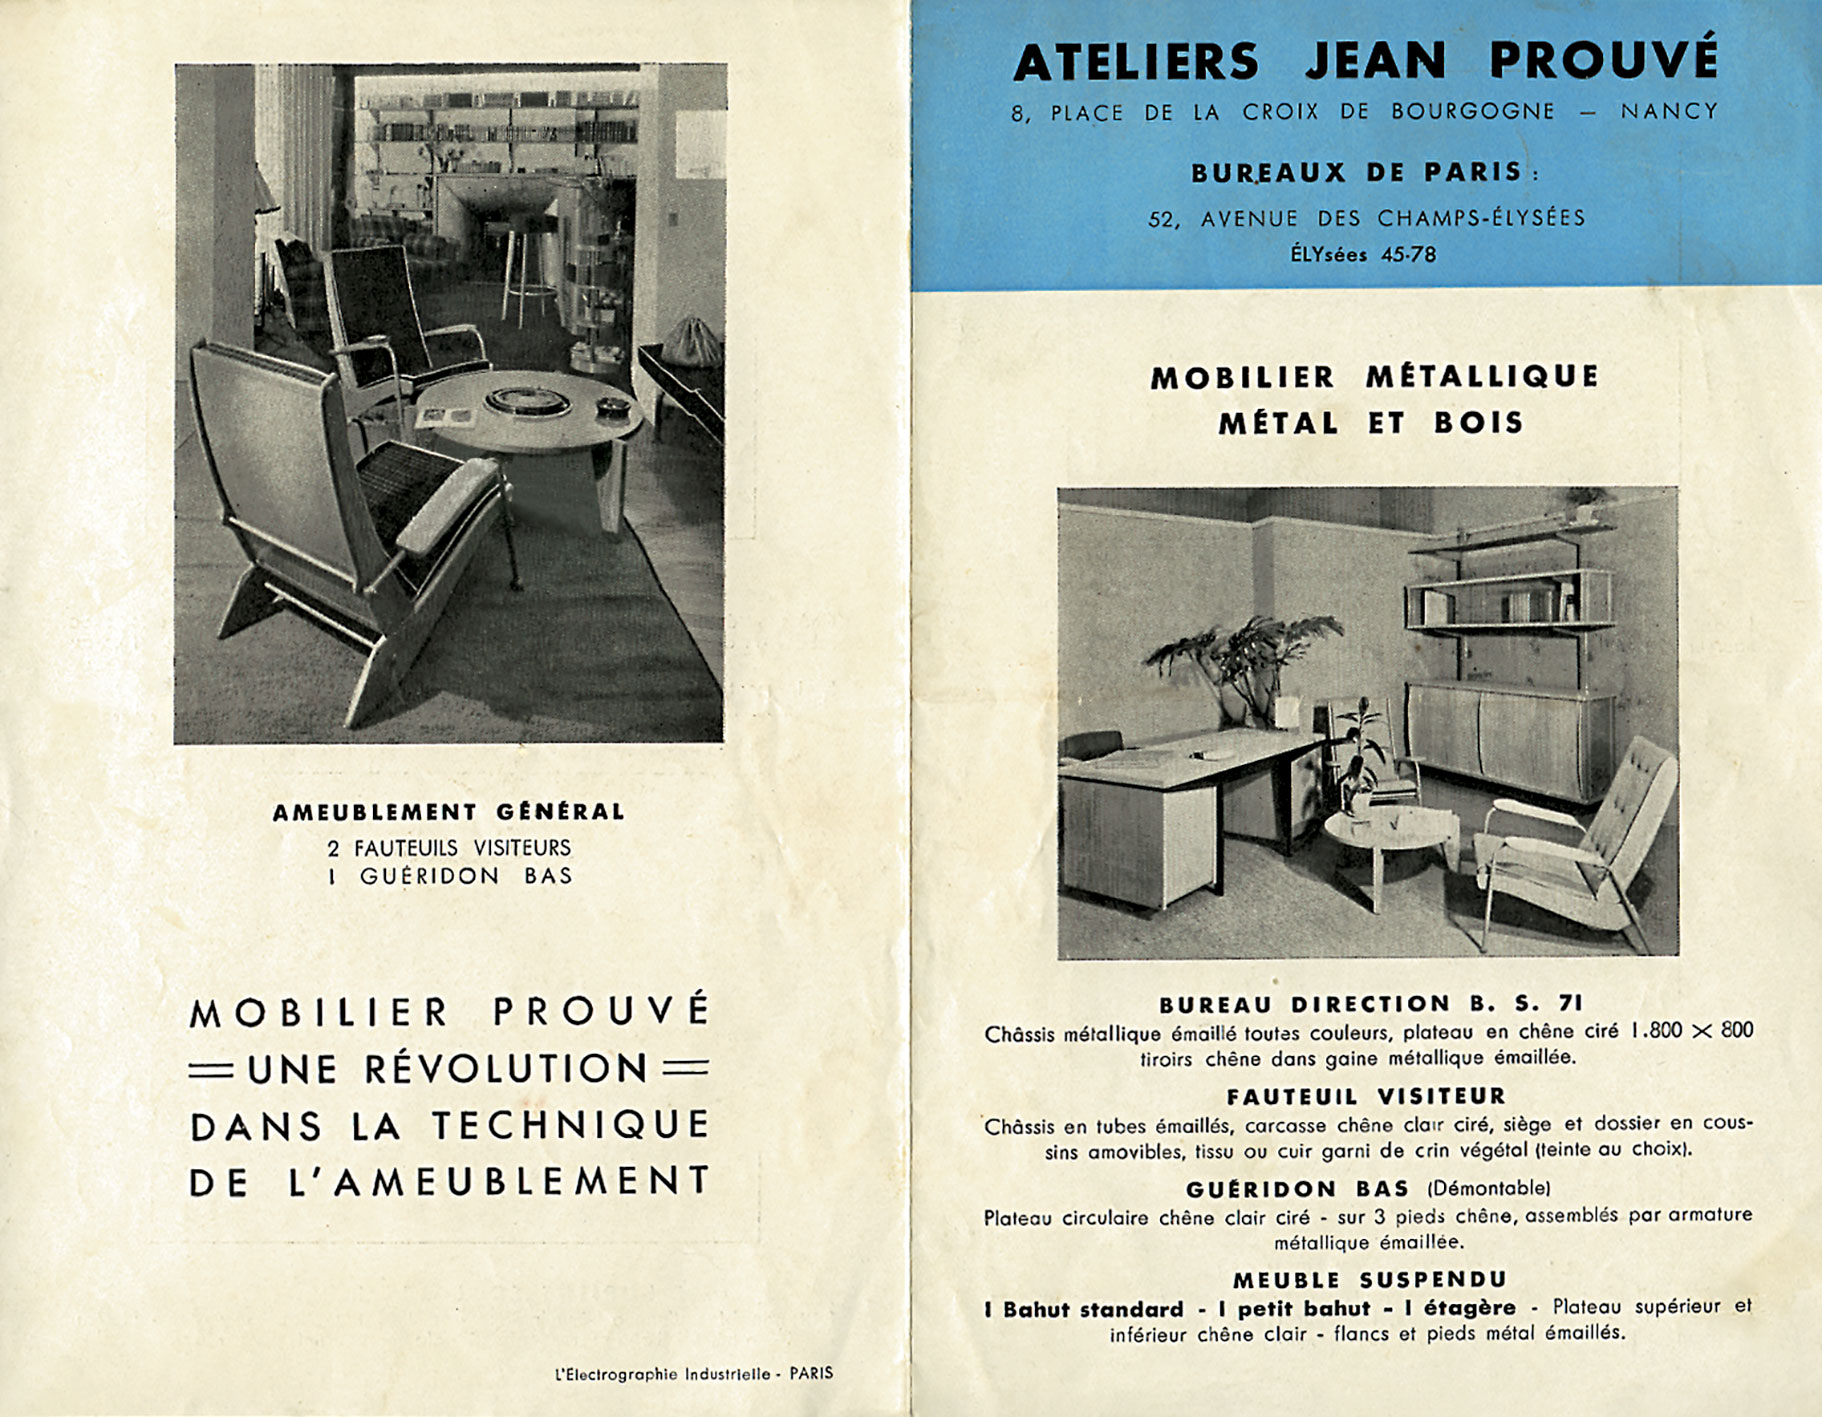 Advertising brochure <i>Ateliers Jean Prouvé, Mobilier métallique, métal et bois</i>, Paris, printed by L’Électrographie industrielle, 1949.